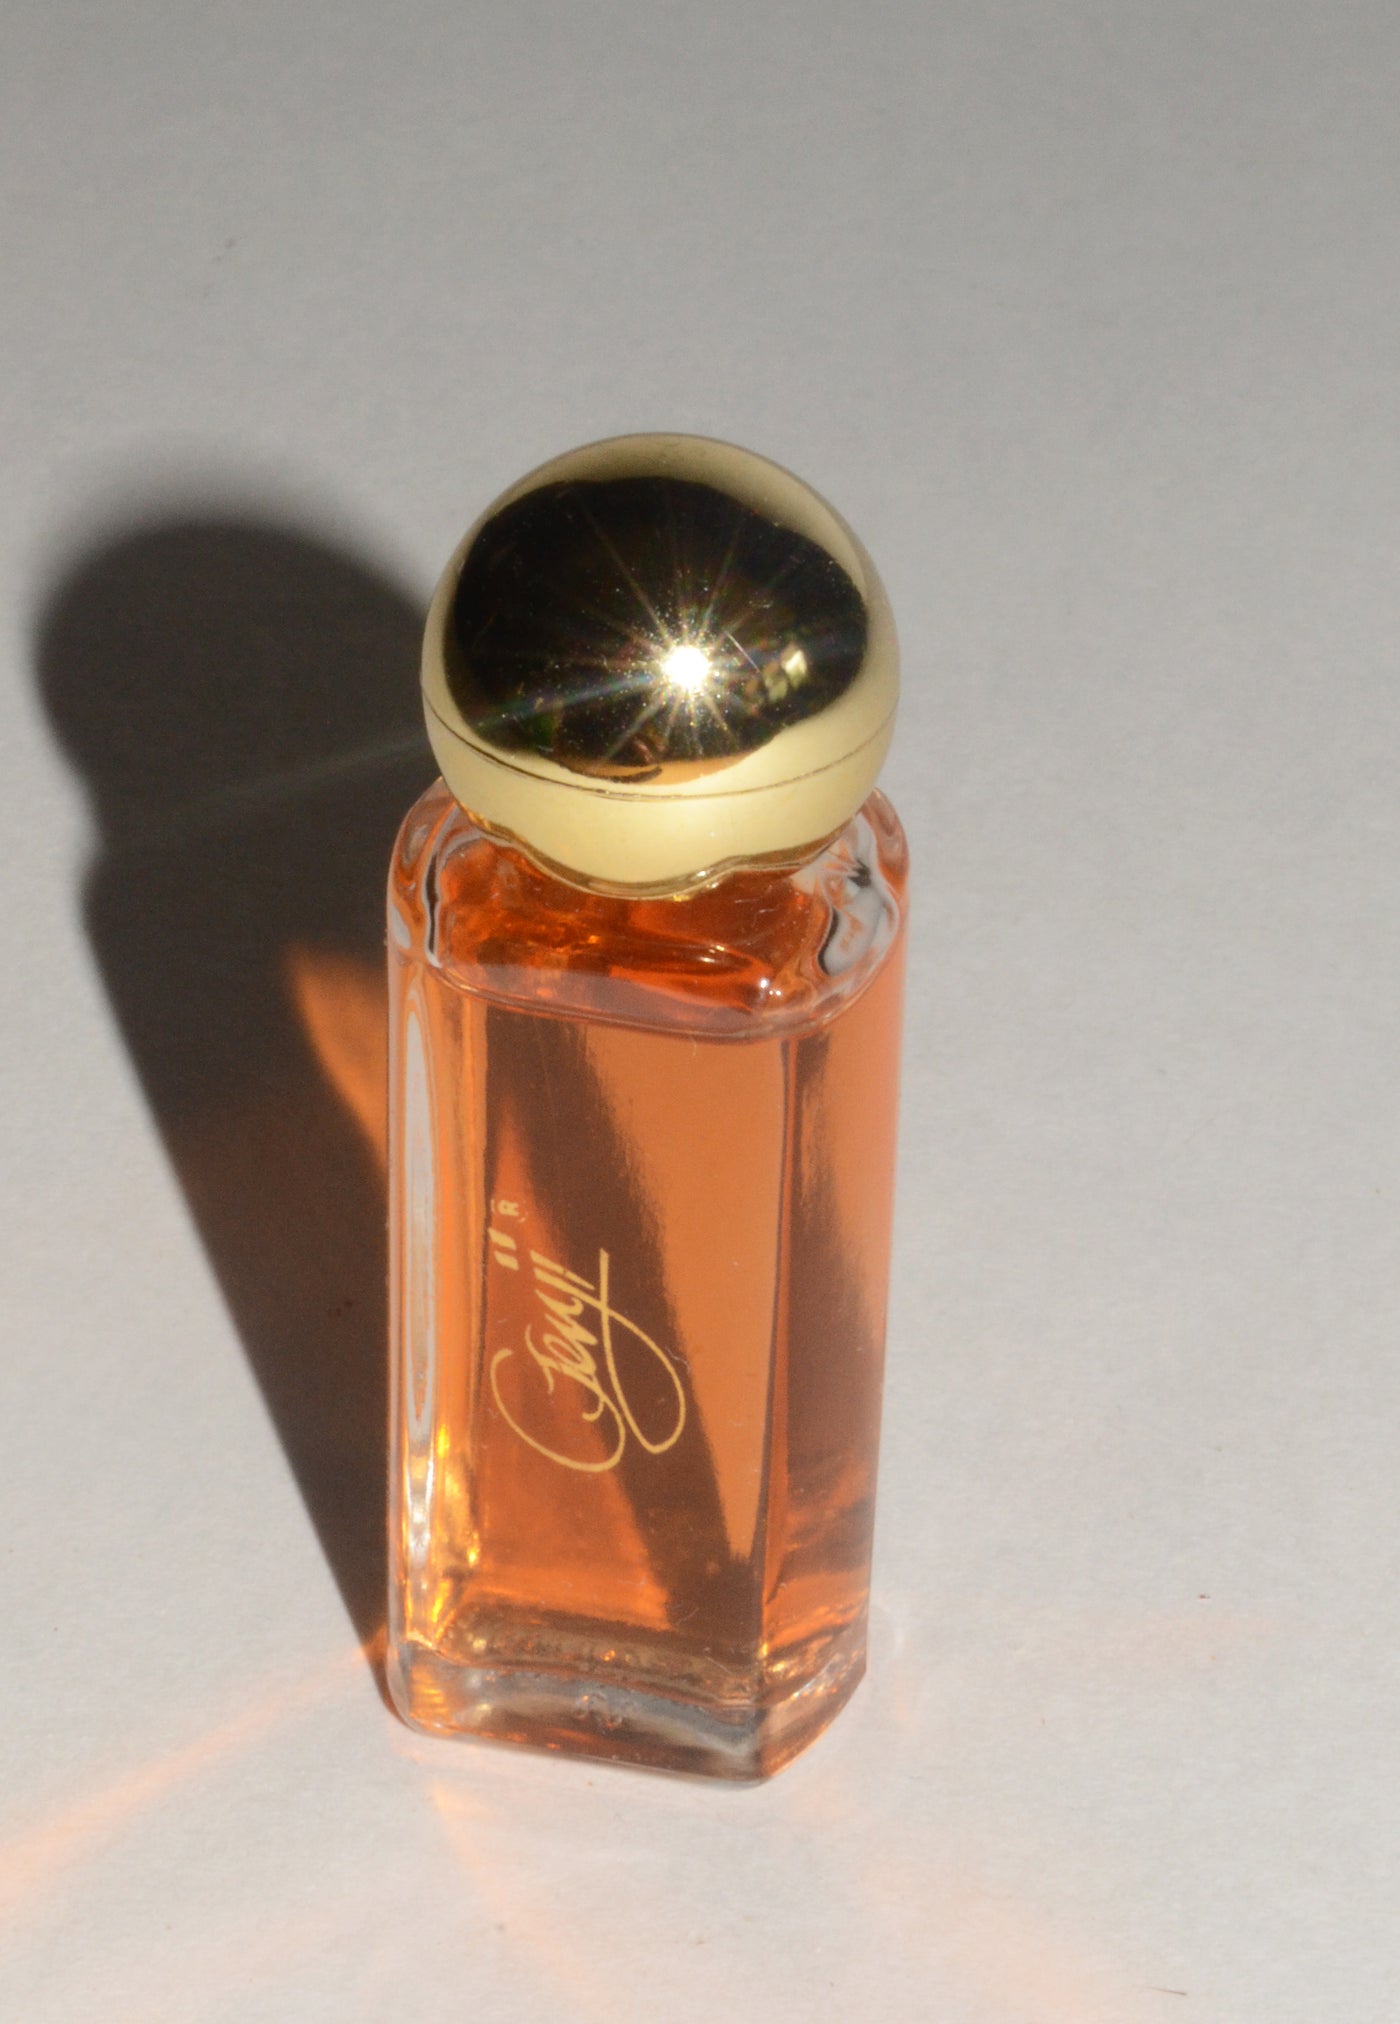 Genji Fine Perfume By Mary Kay